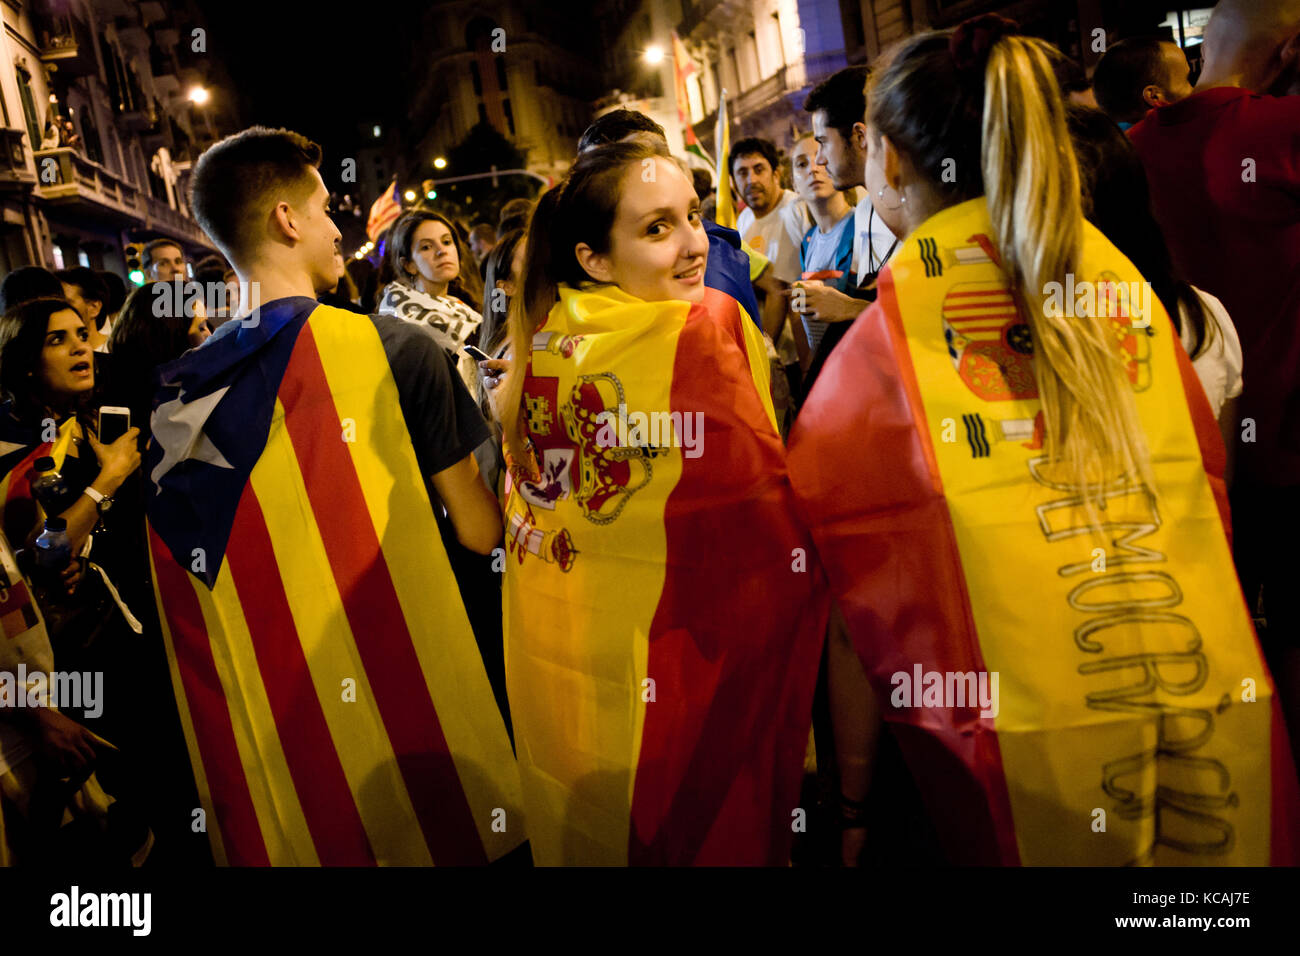 Barcelone, Catalogne, espagne. 3ème oct 2017. Les jeunes femmes enveloppés de drapeaux espagnols et d'un homme enveloppé d'un drapeau indépendantiste estelada ou prendre part ensemble à une manifestation contre la brutalité policière espagnole à Barcelone. grève générale journée avec des manifestations massives sur territoire catalan pour protester contre la brutalité par la police lors d'un référendum sur la sécession de la région de l'Espagne qui a laissé près de neuf cent de personnes blessées. crédit : jordi boixareu/zuma/Alamy fil live news Banque D'Images